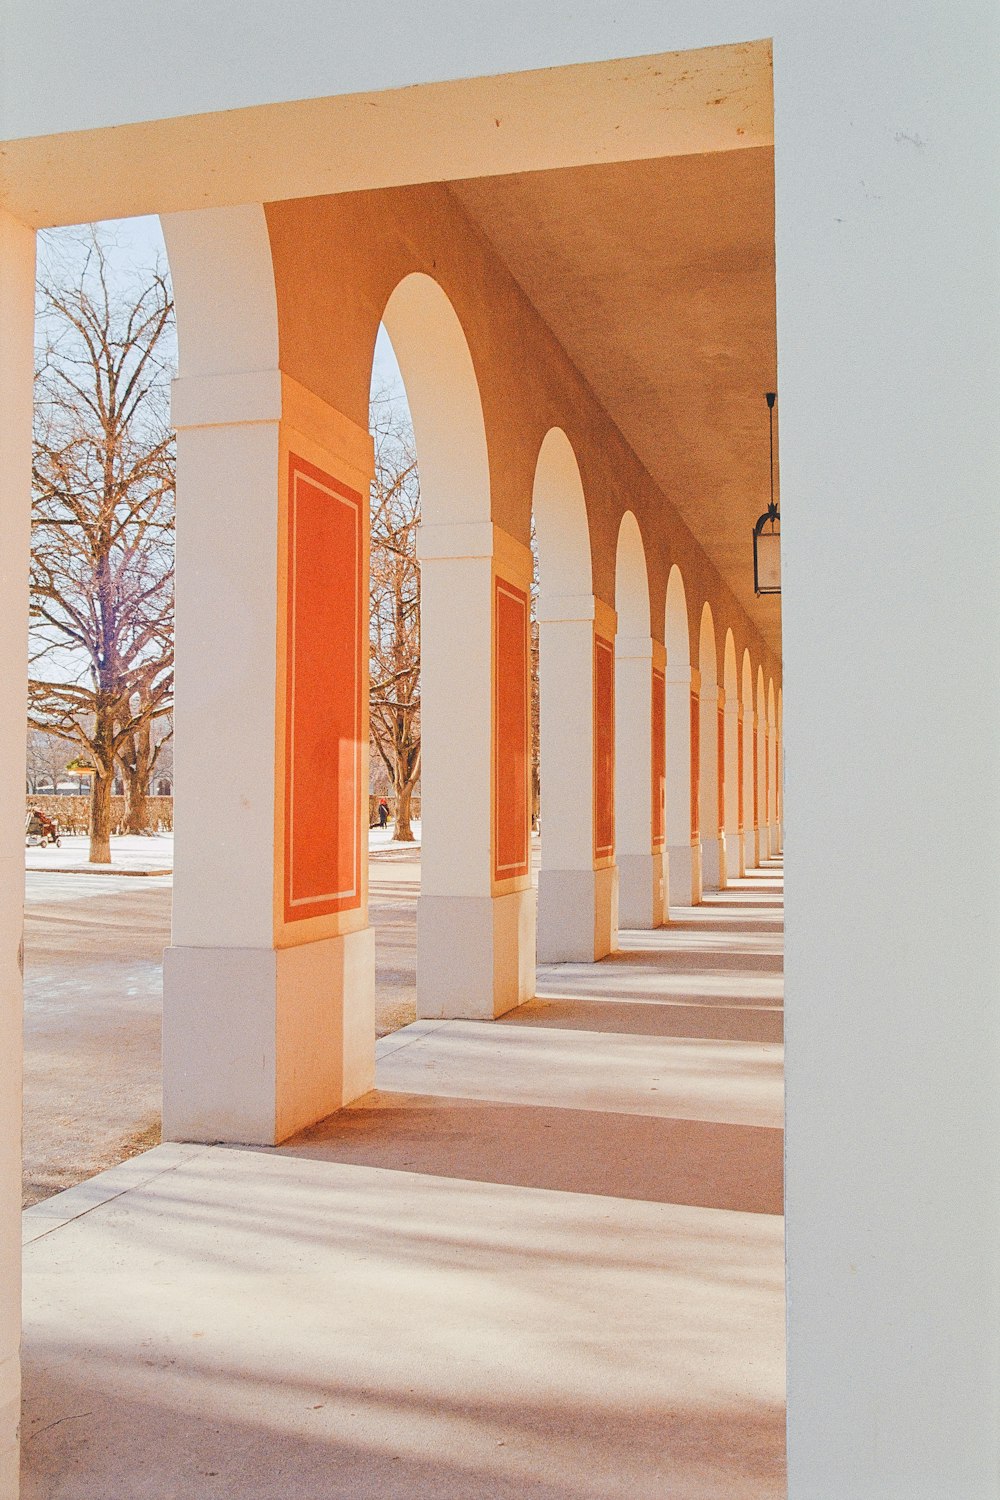 una fila di pilastri bianchi con porte arancioni